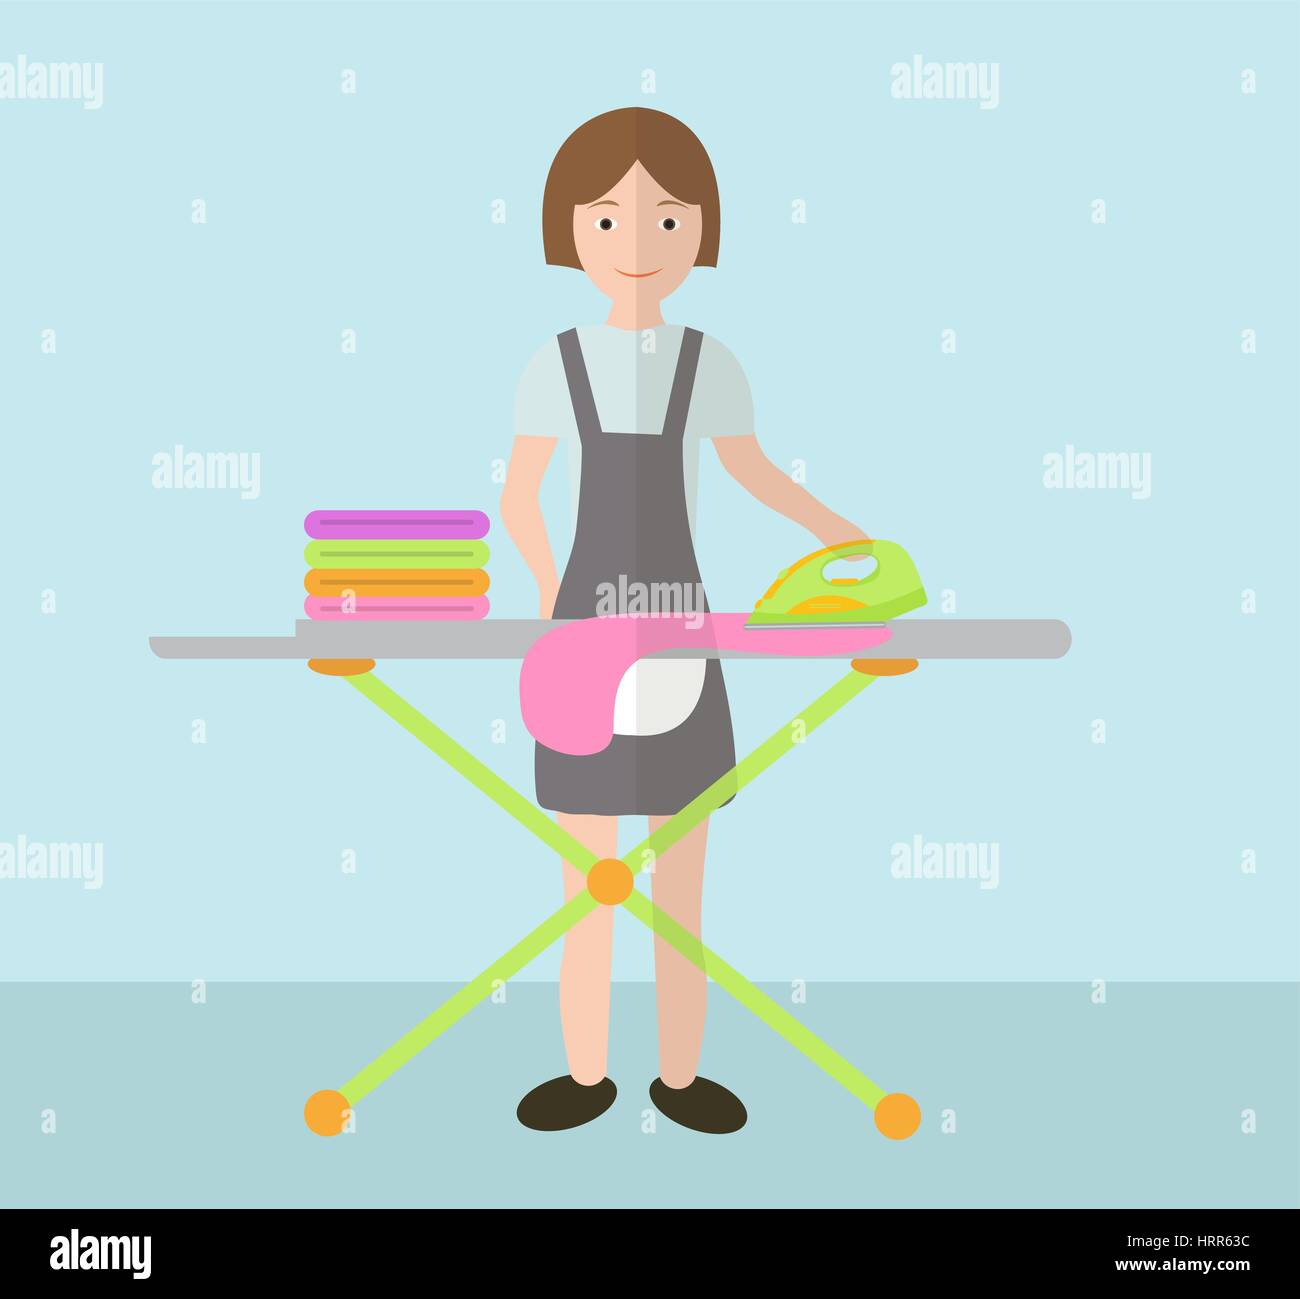 Eine Frau bügelt Kleider. Bügelbrett und Bügeleisen. Vektor-illustration Stock Vektor